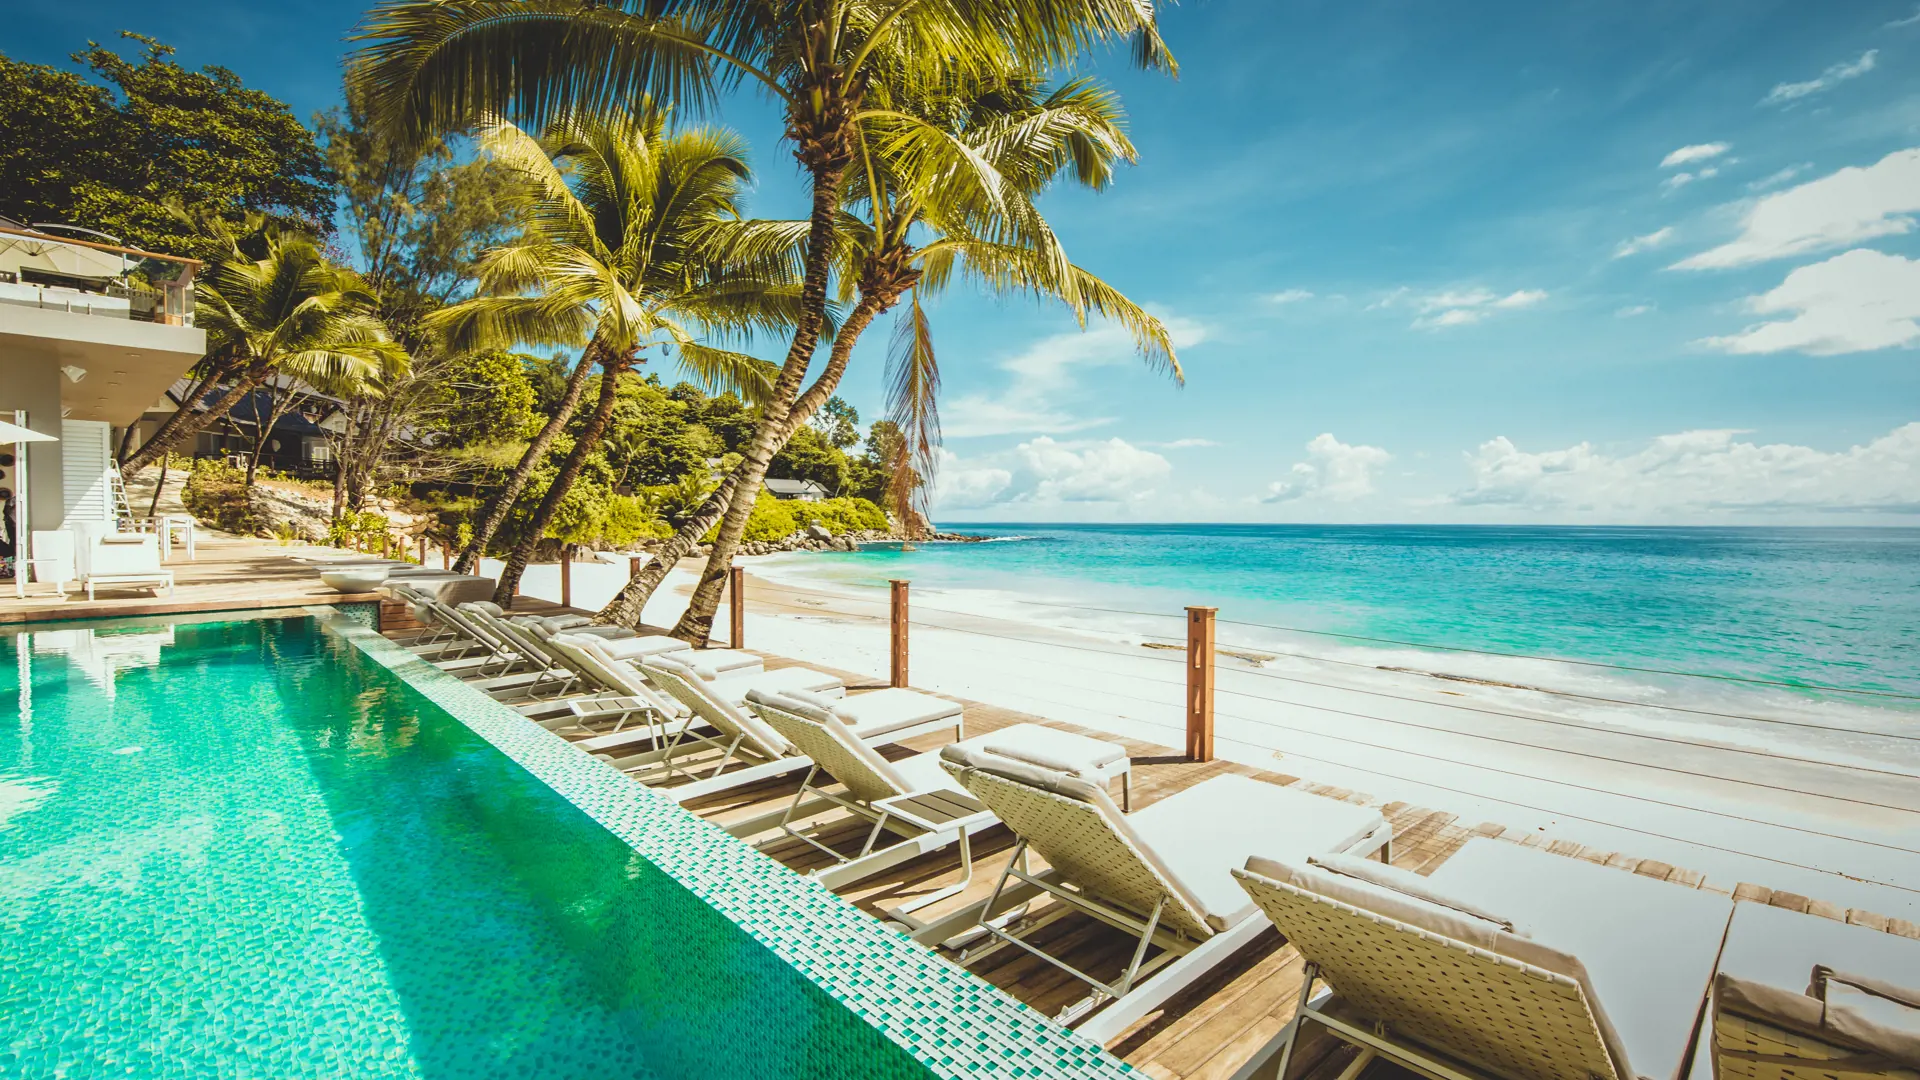 POOL & STRAND - I kan nyde både pool og strand på Carana Beach Hotel. Smid jer på en strandstol og flad ud under solens varme stråler.